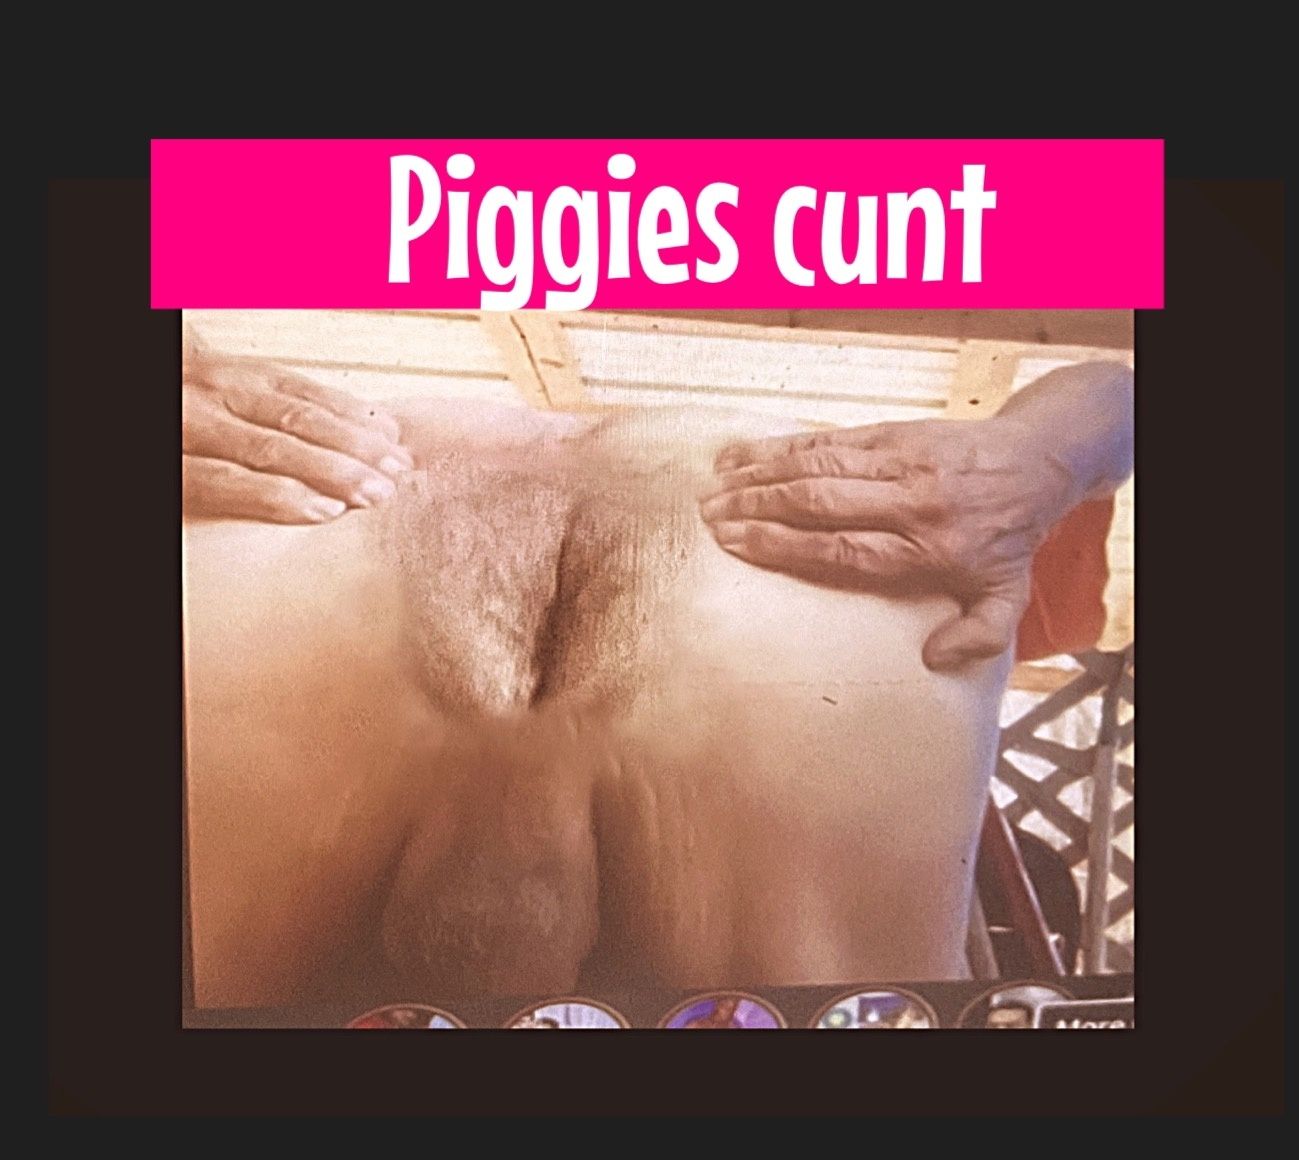 Piggies cunt